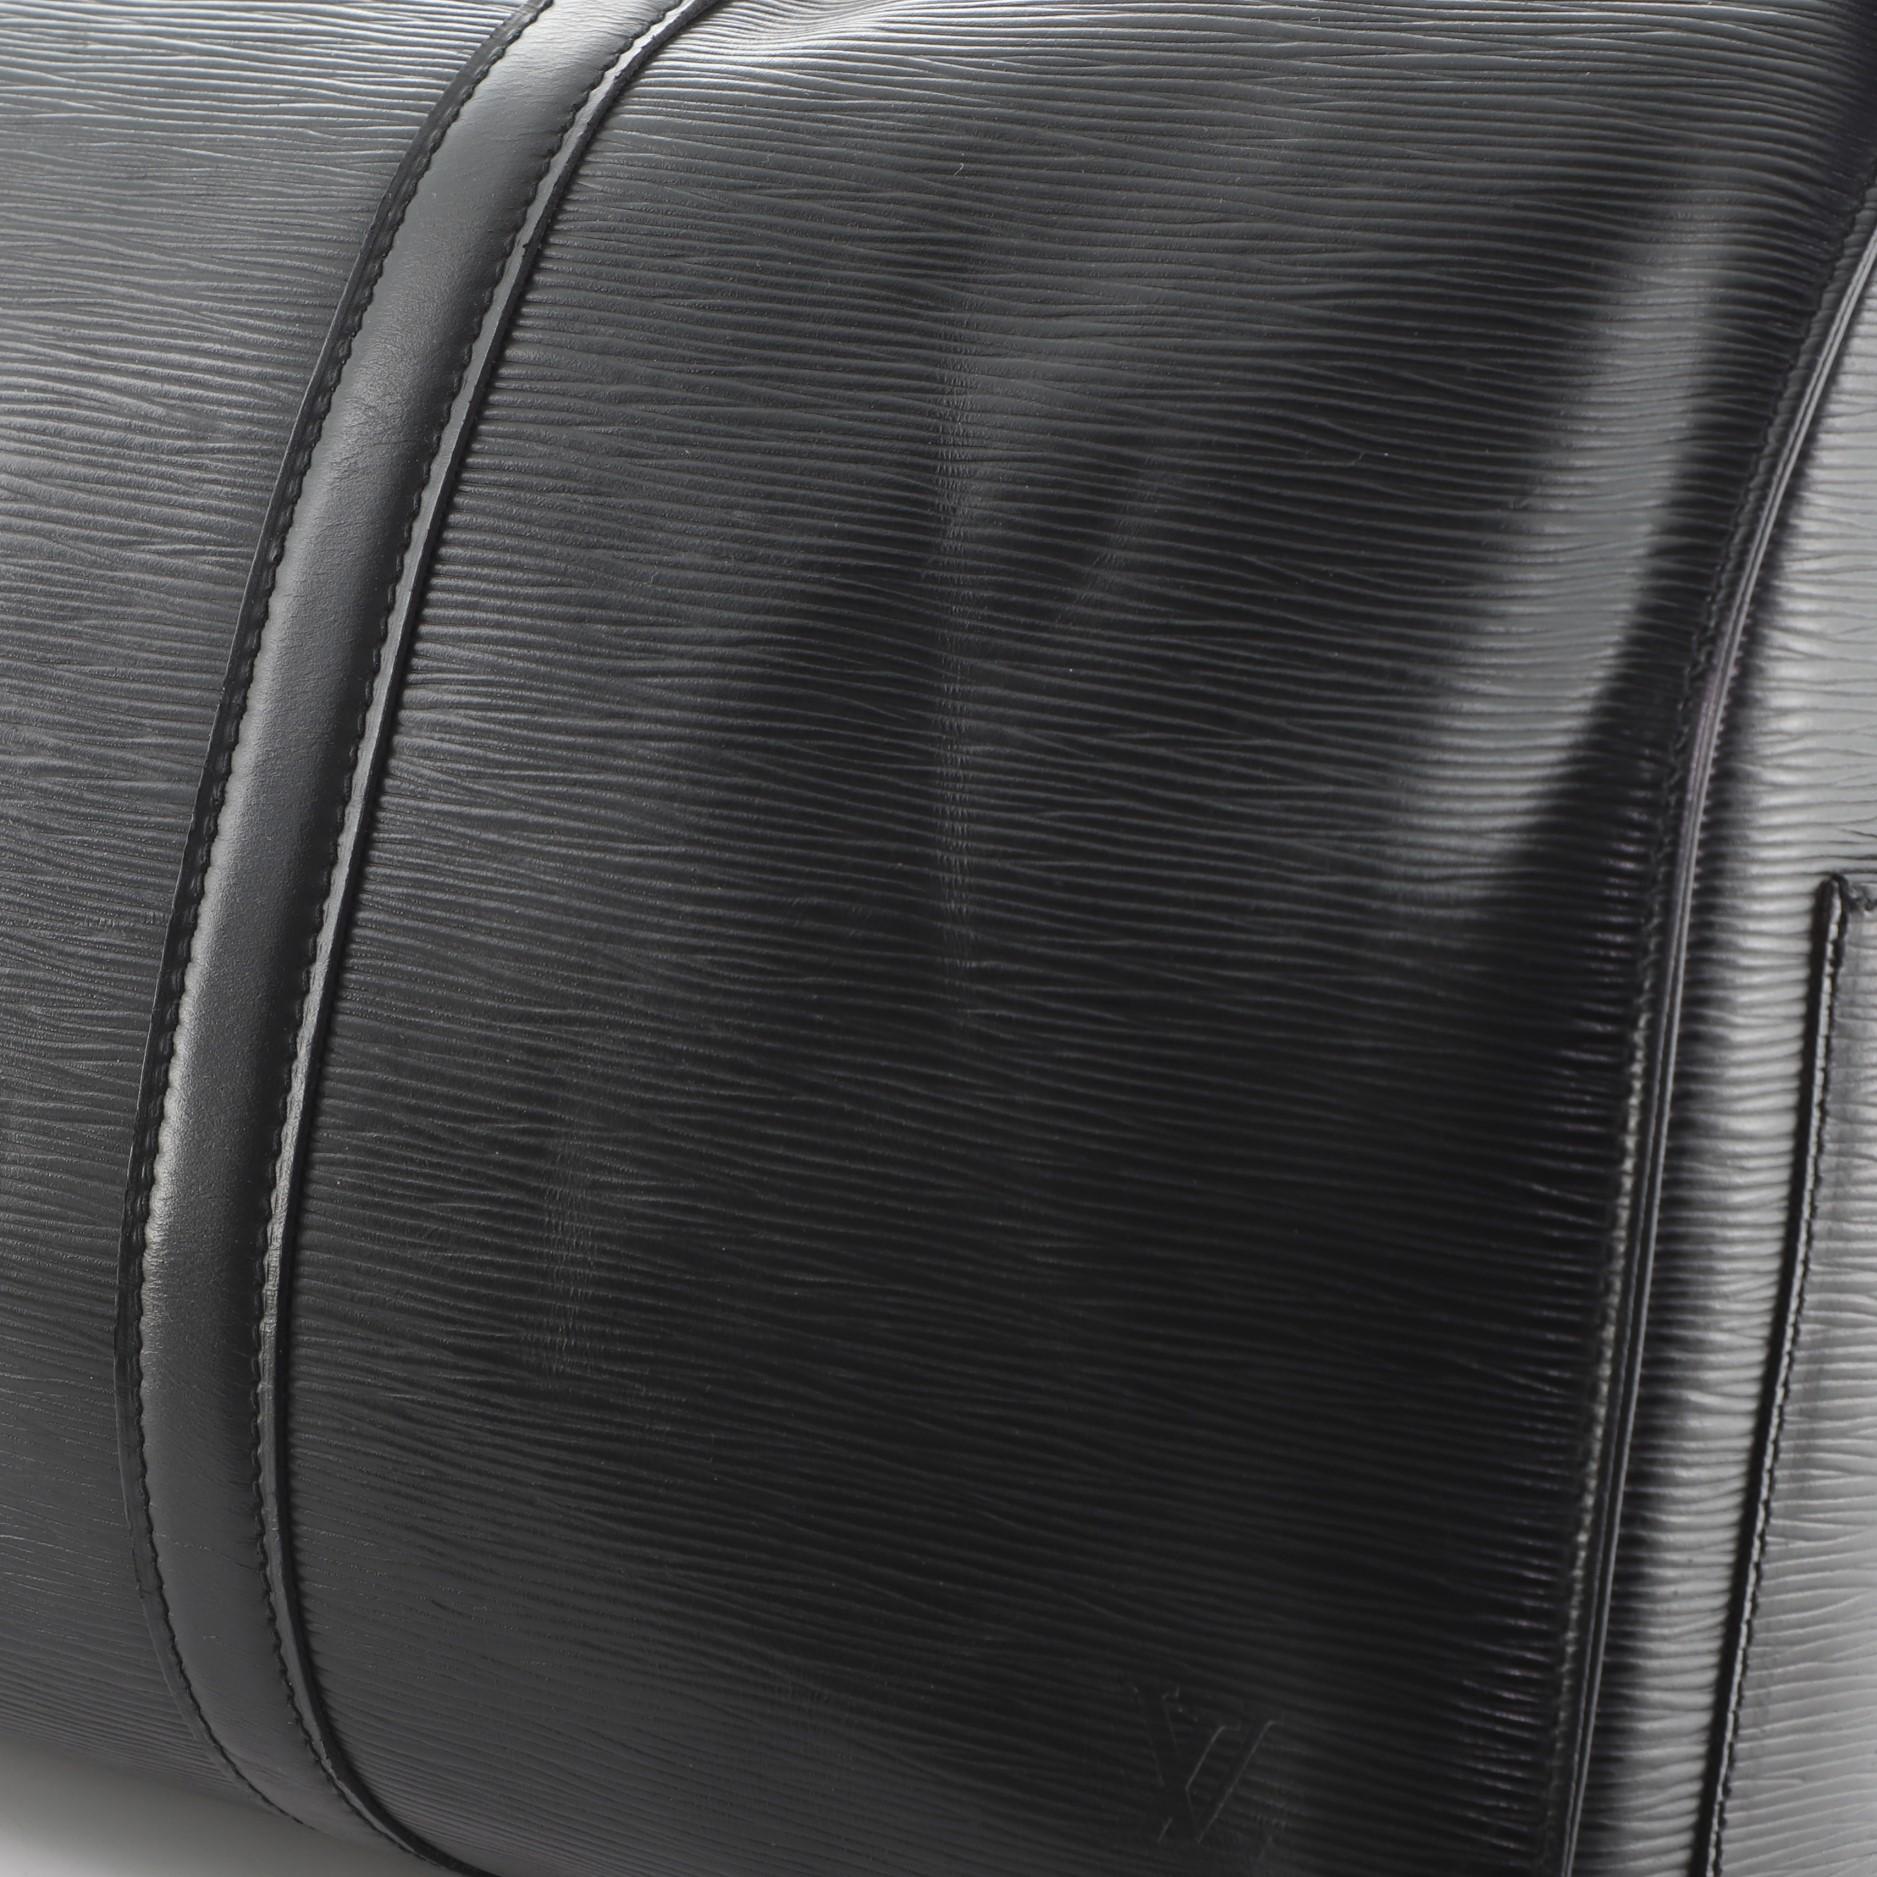  Louis Vuitton Keepall Bag Epi Leather 45 2